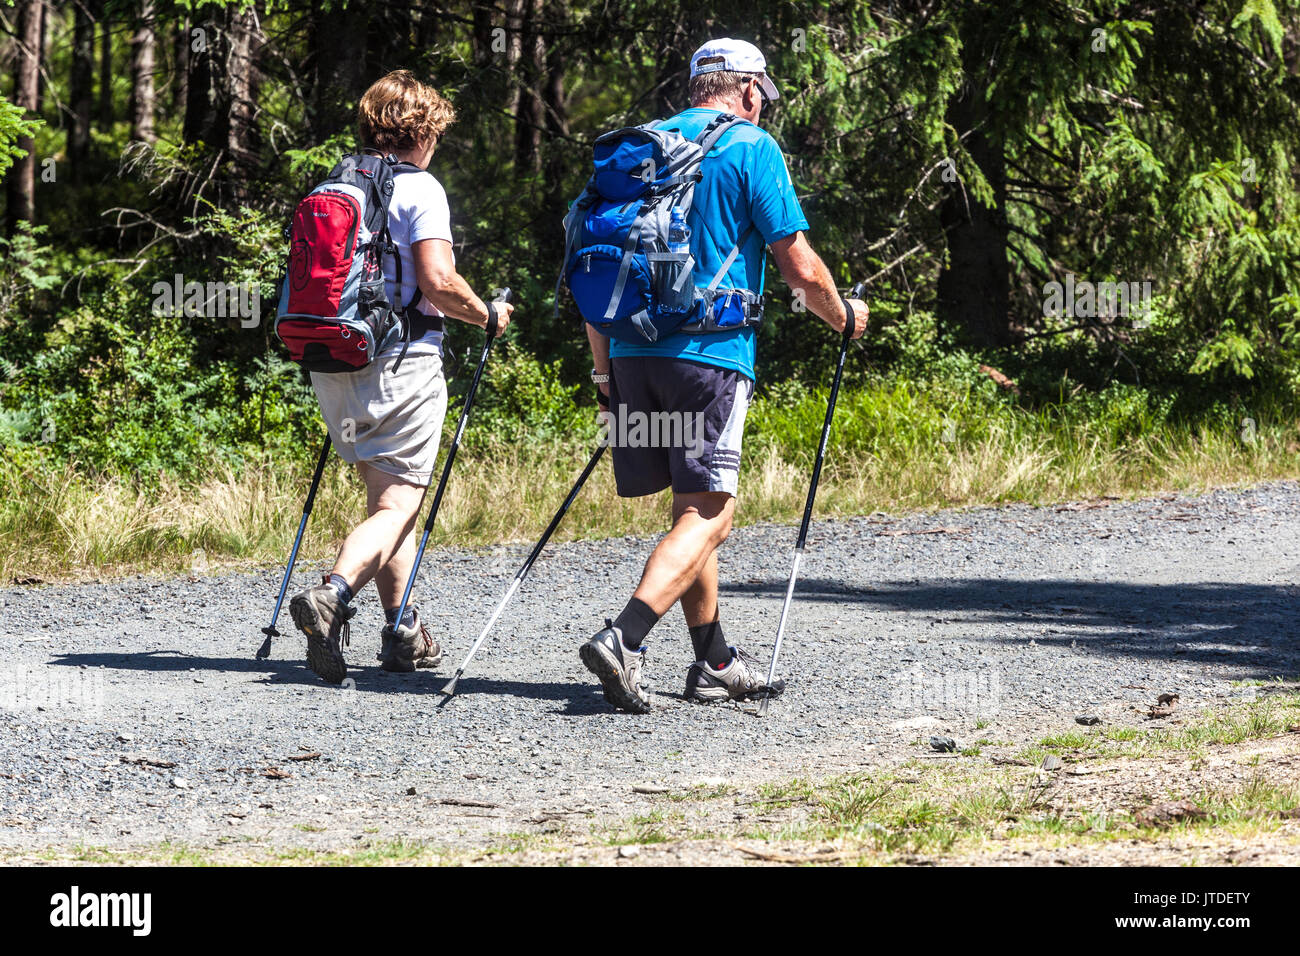 Aktive Menschen auf Reise im Wald Seniorenpaar Nordic Walking, Tschechische Republik Sumava Nationalpark gesunde Lebensweise Seniorenwanderer Stockfoto